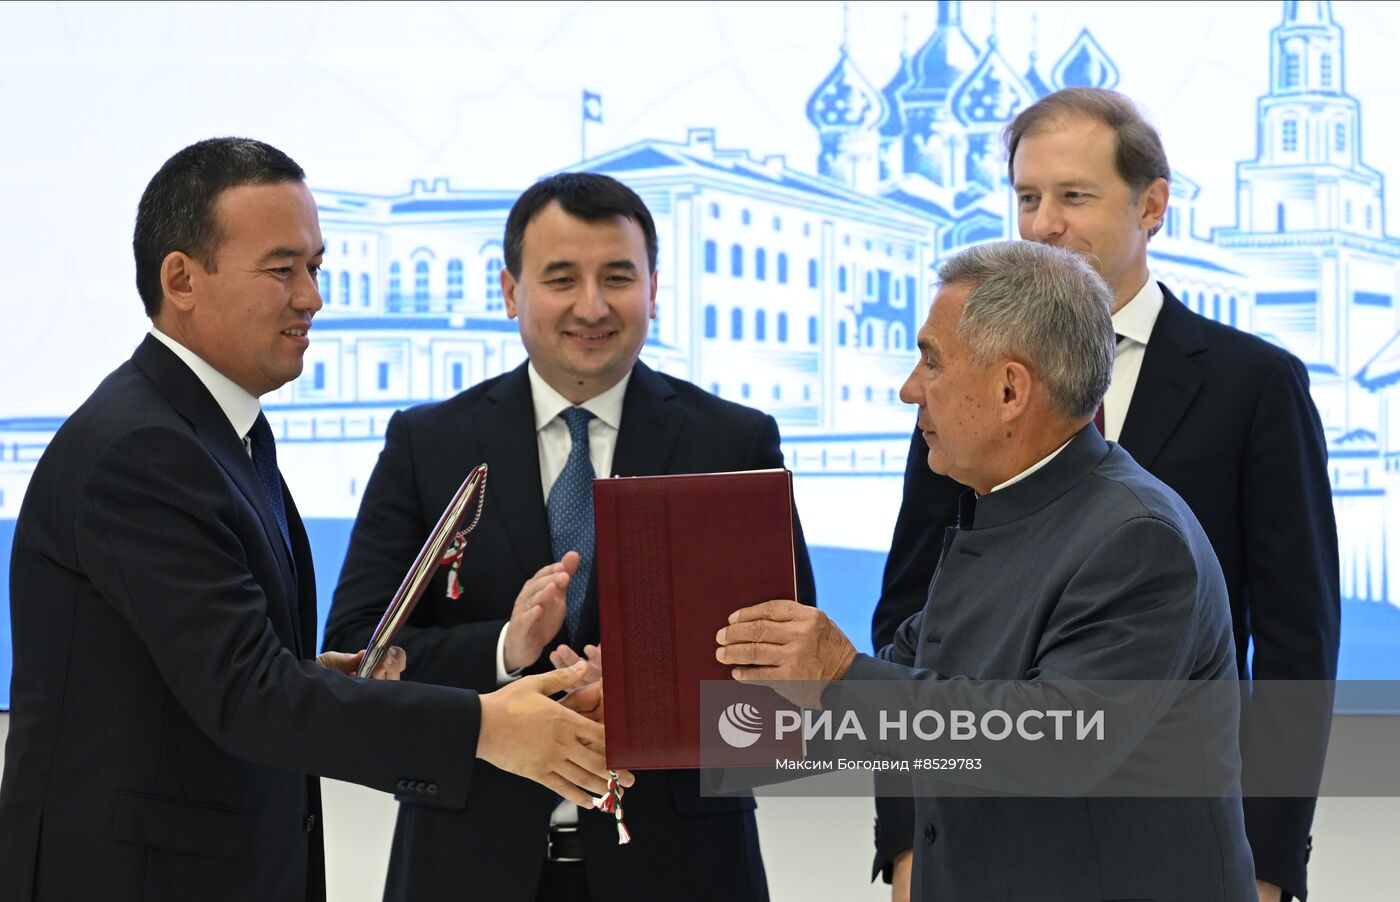 Форум межрегионального сотрудничества между Россией и Узбекистаном в Казани